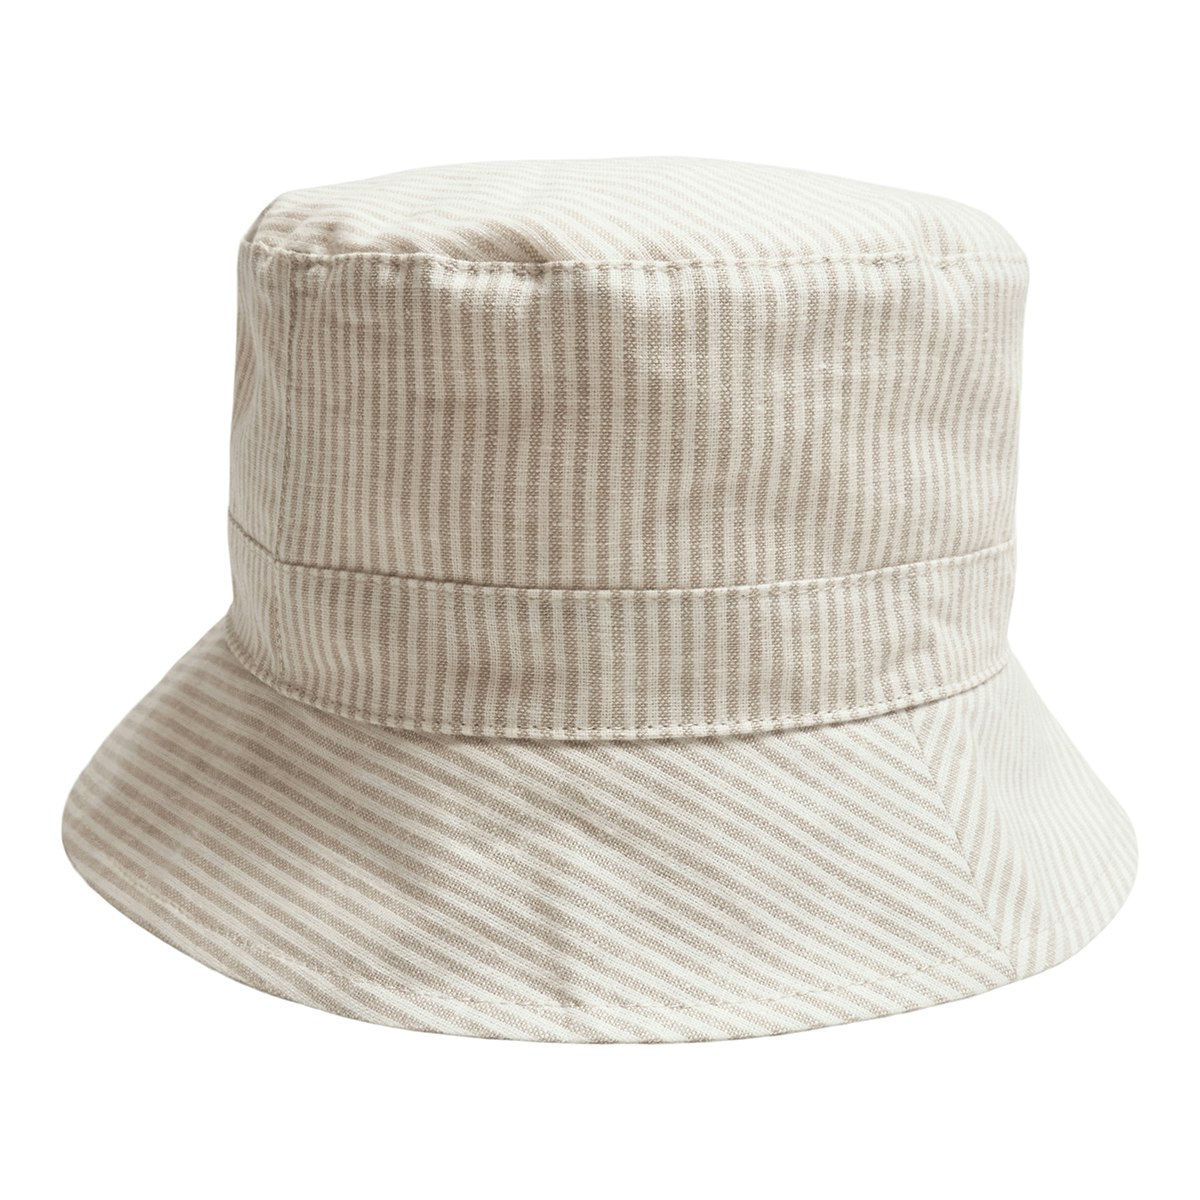 Huttelihut Bucket Hat Striped Camel.